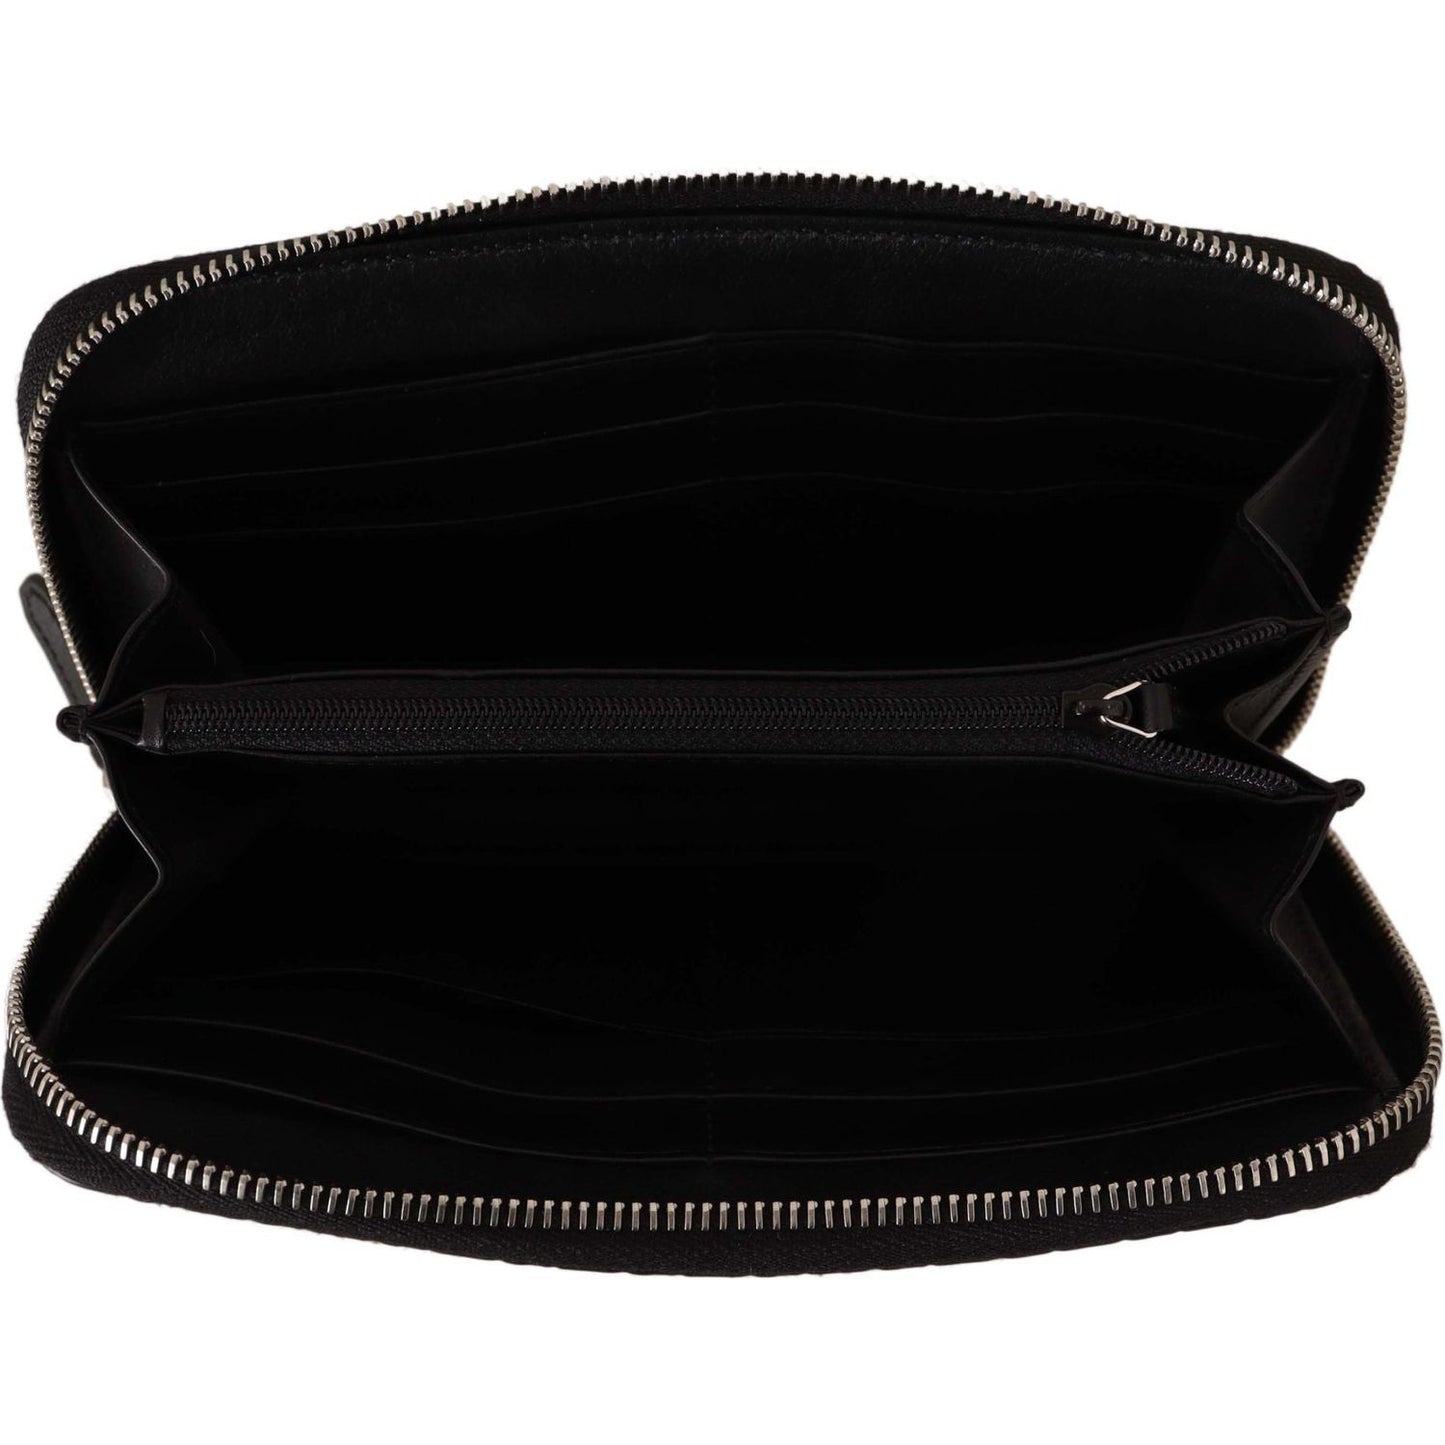 Gucci Elegant Black Leather Zip-Around Wallet black-wallet-microguccissima-leather-zipper-wallet